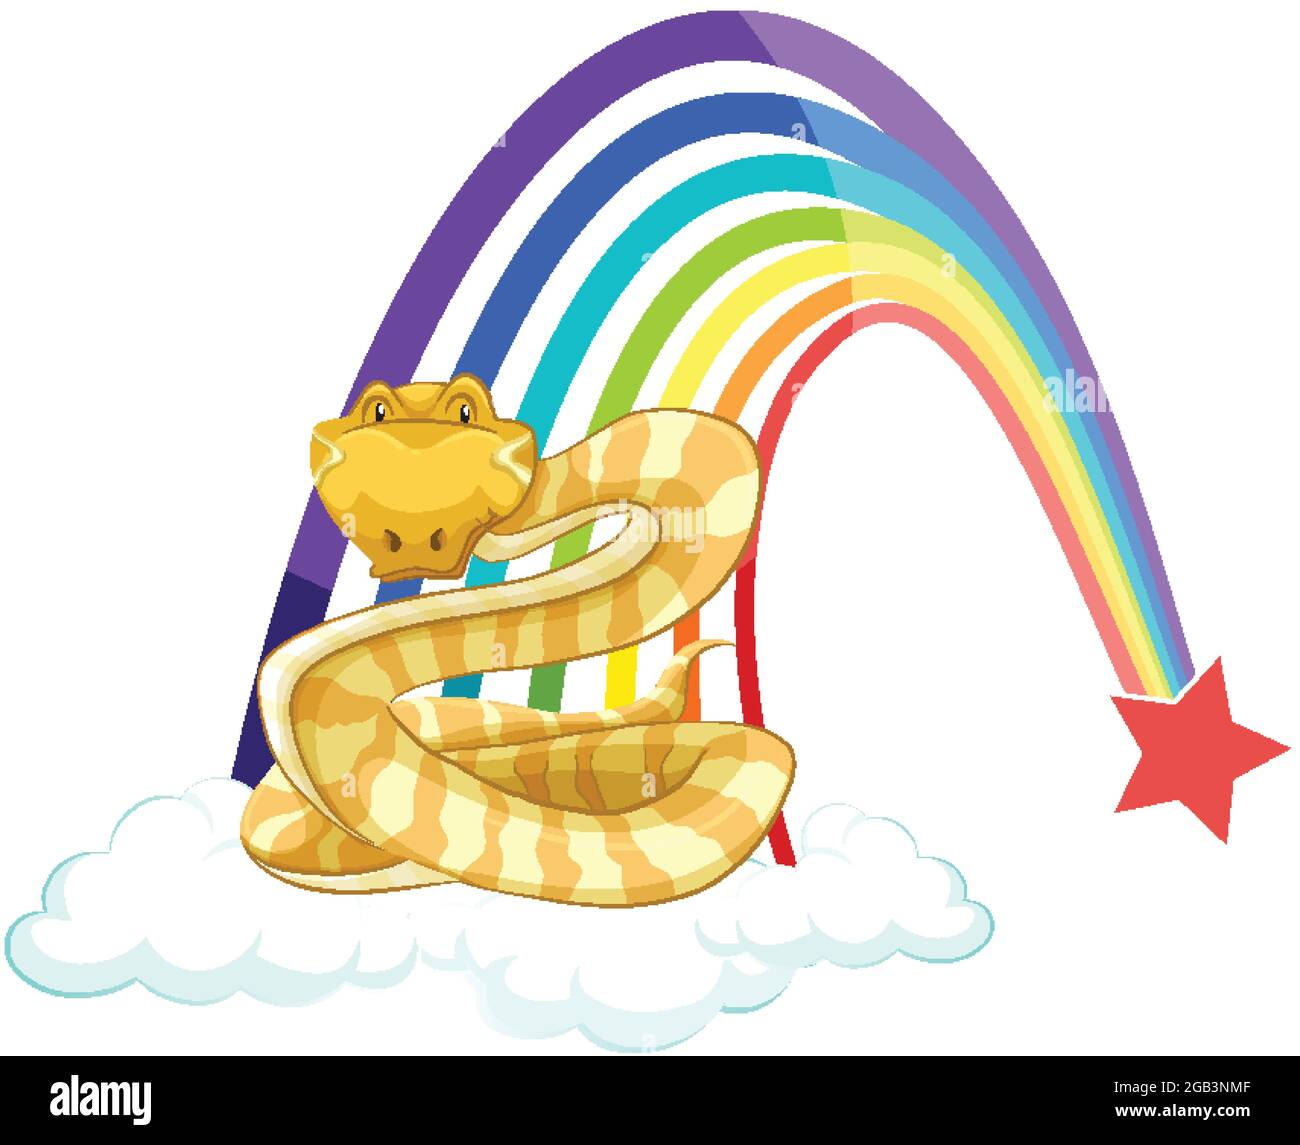 Eine Schlange Zeichentrickfigur auf der Wolke mit Regenbogen auf weißem Hintergrund Illustration Stock Vektor